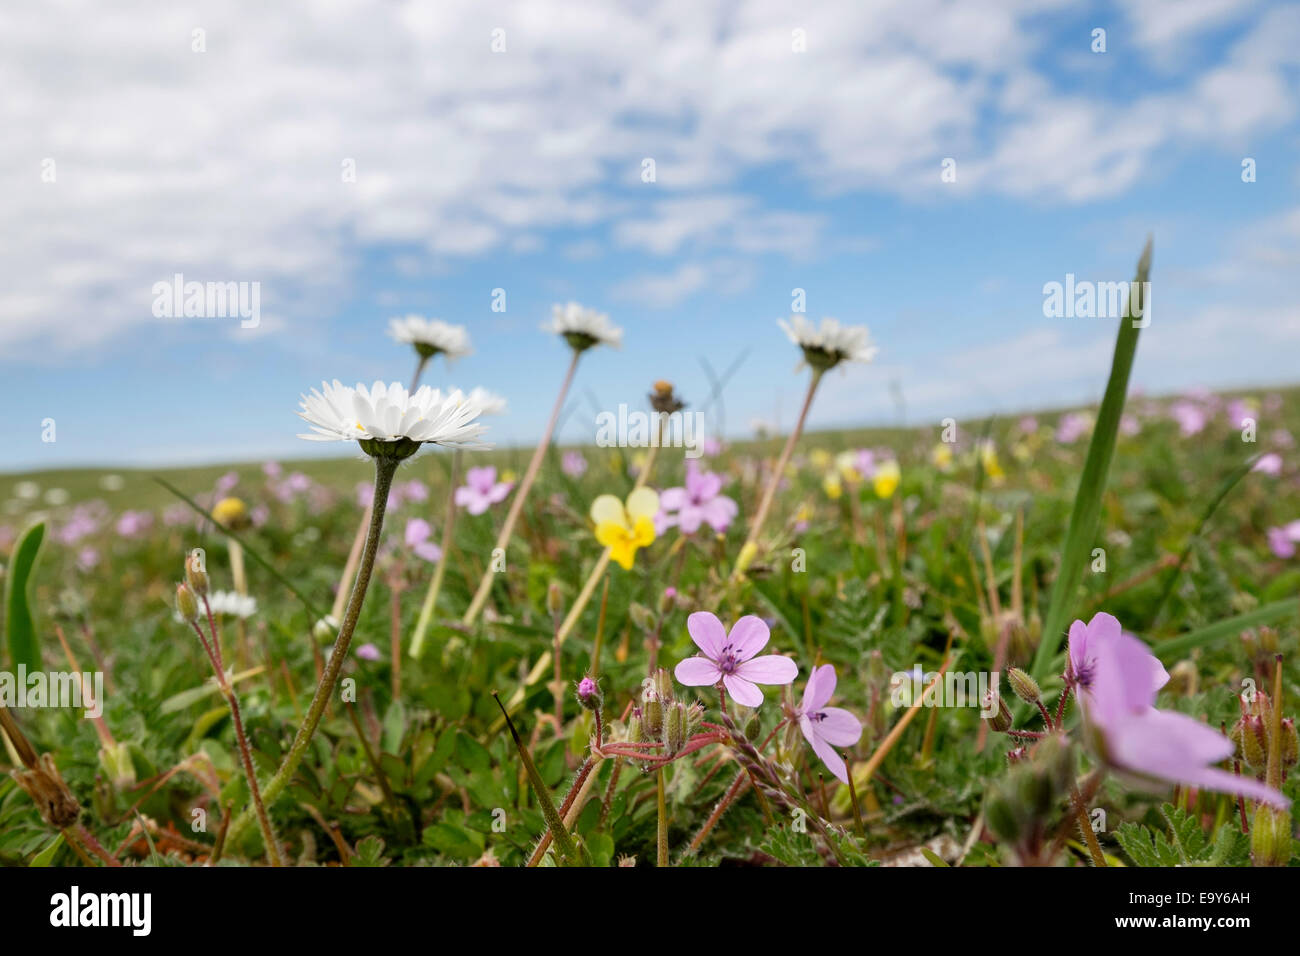 Low angle view de fleurs sauvages poussant dans les prairies "machair" en été à Balranald Réserve Naturelle RSPB, North Uist, îles Hébrides, Ecosse, Royaume-Uni Banque D'Images